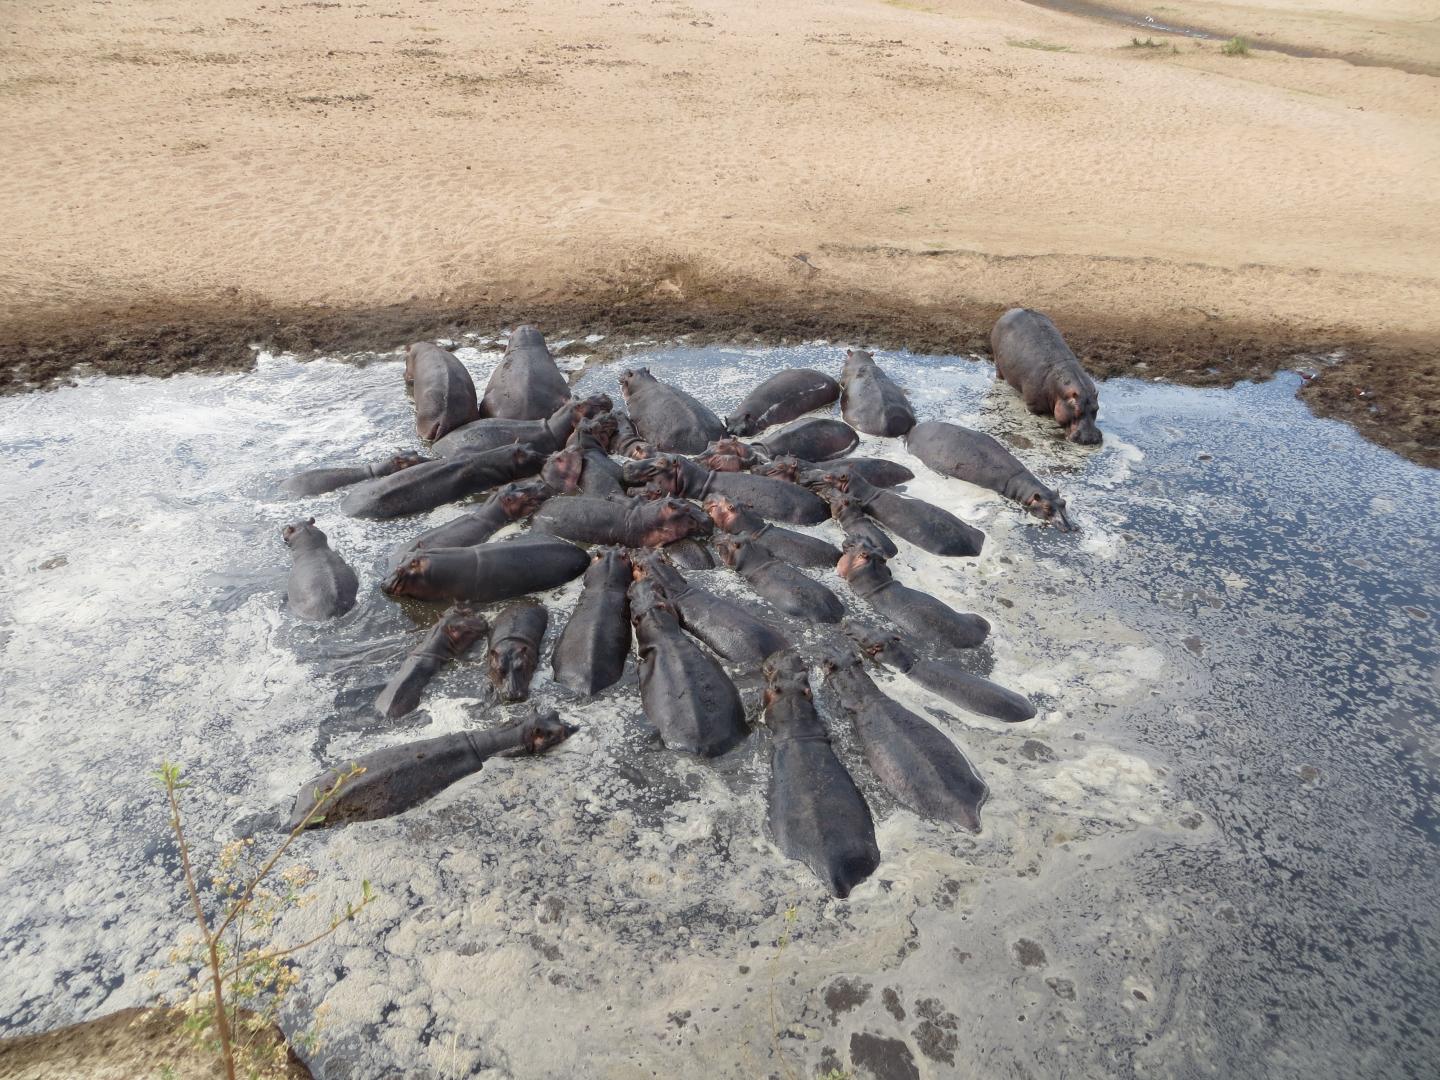 Hippopotamus Pool During Peak Dry Season with Nutrient Rich Water